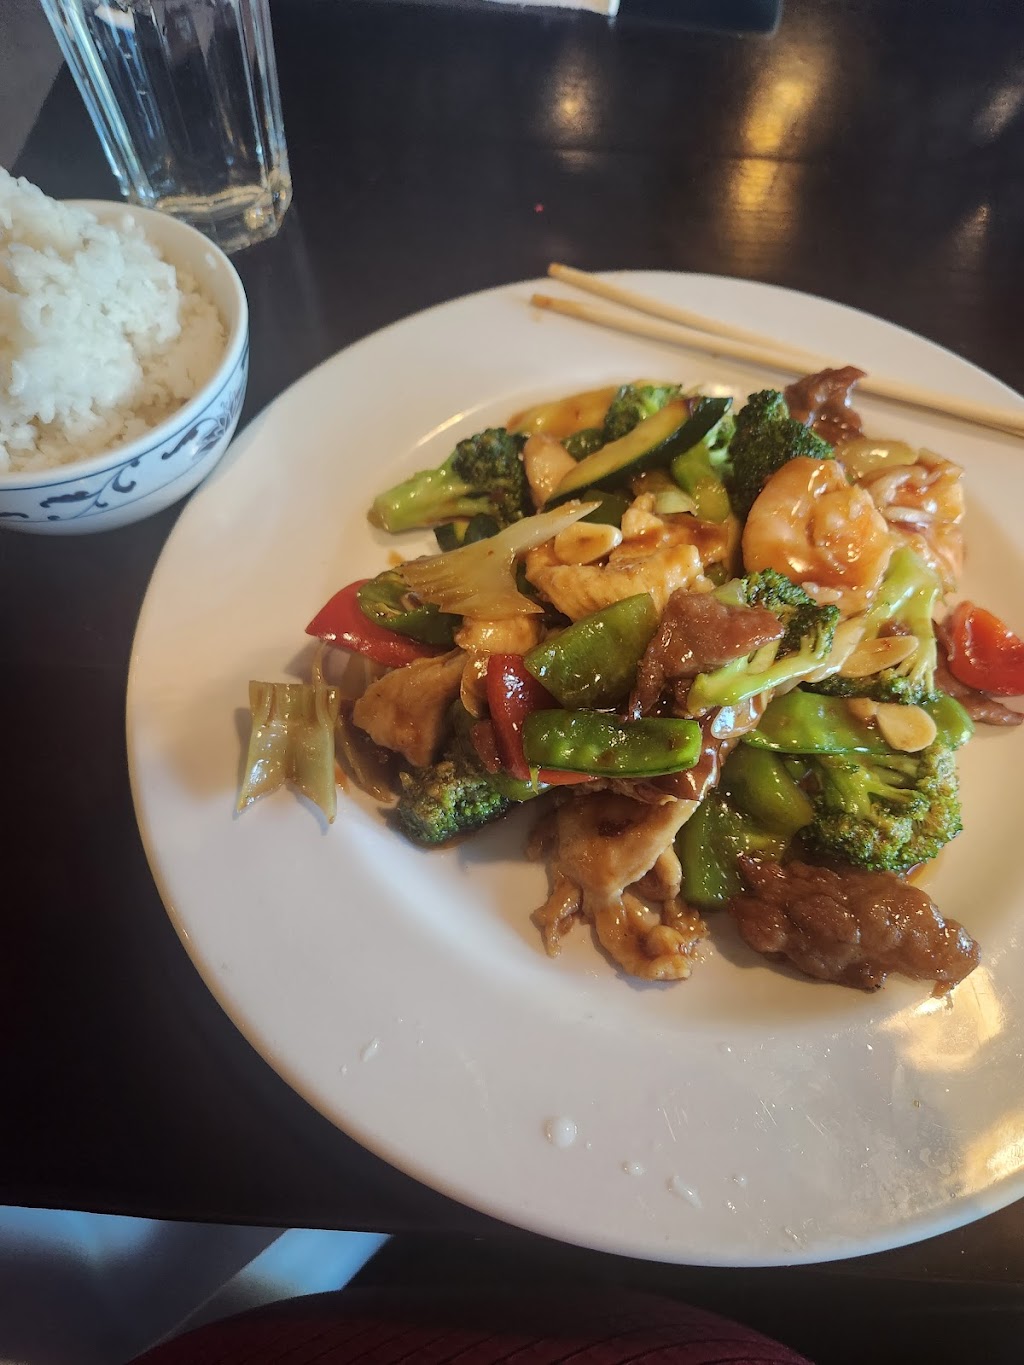 The East Asian Cuisine | 305 Stockbridge Rd, Great Barrington, MA 01230 | Phone: (413) 528-8850